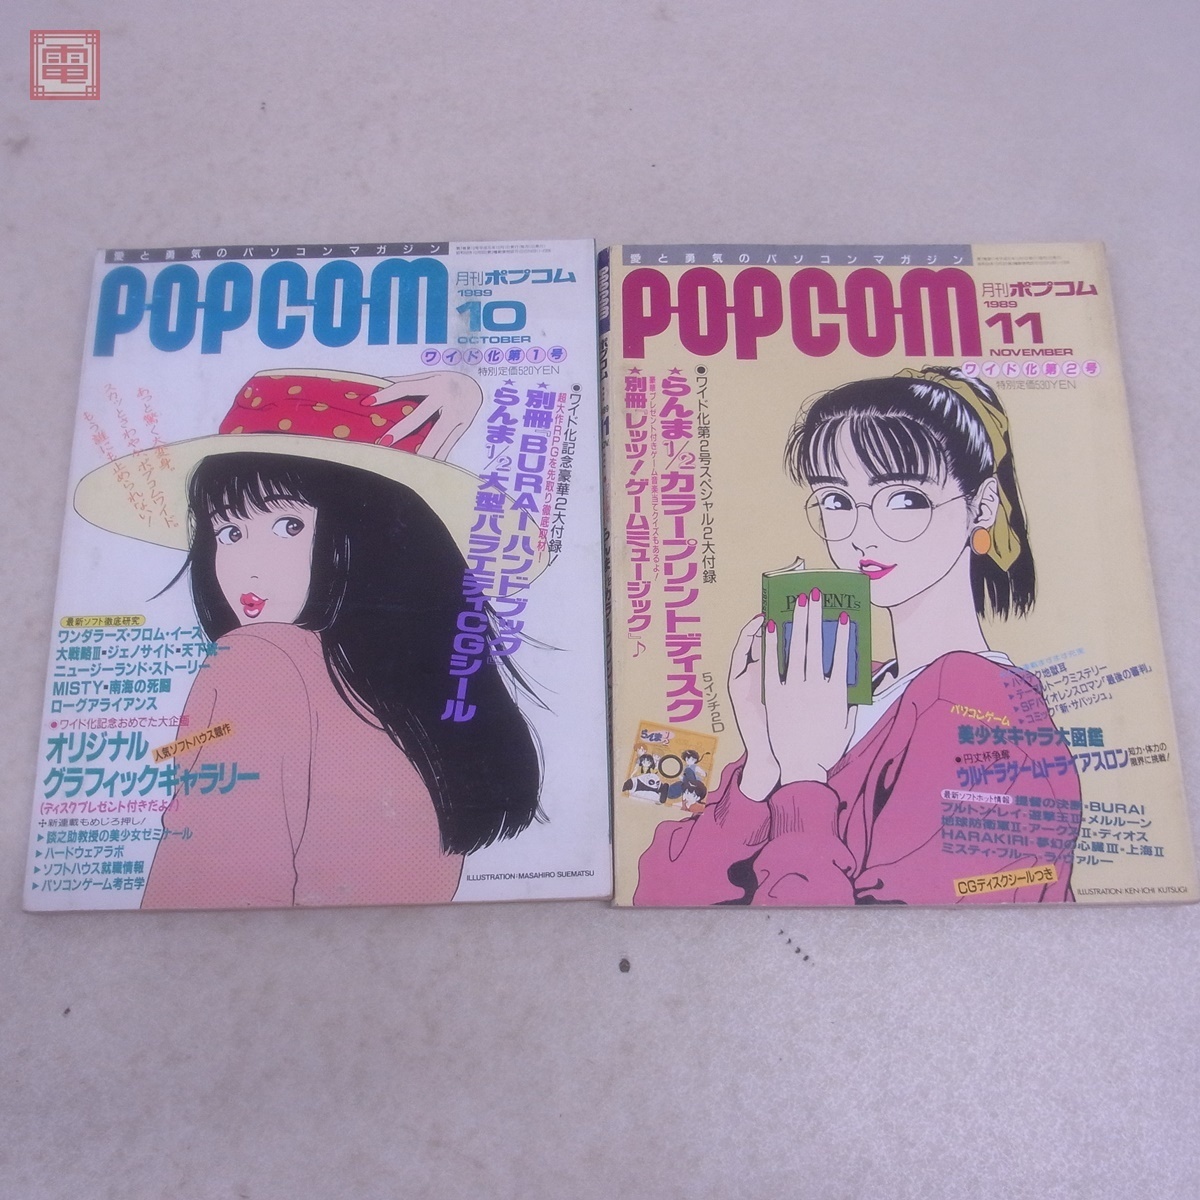  журнал ежемесячный pop com 1989 год 1/3/5/6/8/10/11 месяц номер не комплект совместно 7 шт. комплект POP COM Shogakukan Inc. не осмотр товар [20